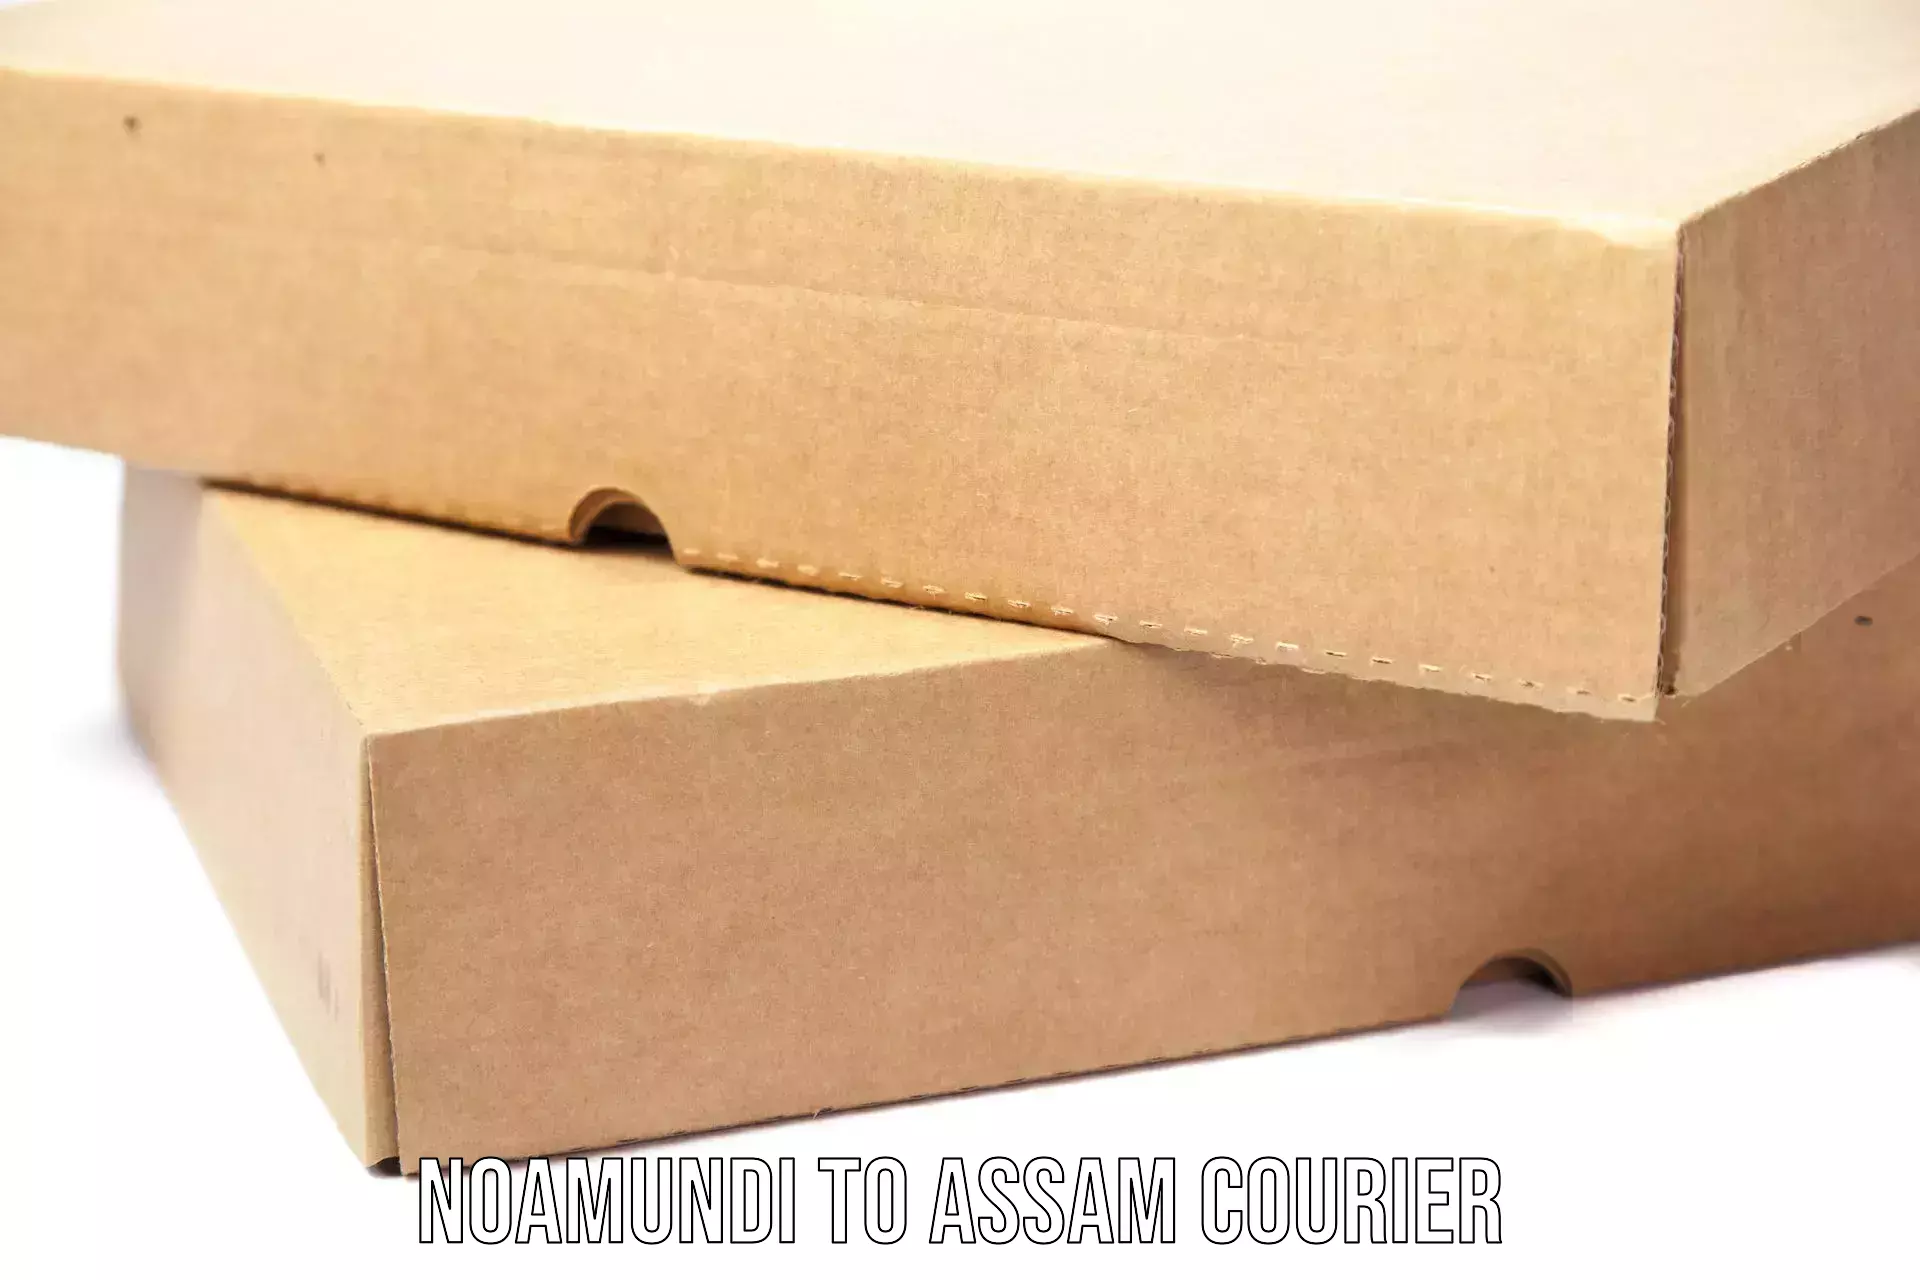 Courier service innovation Noamundi to Assam